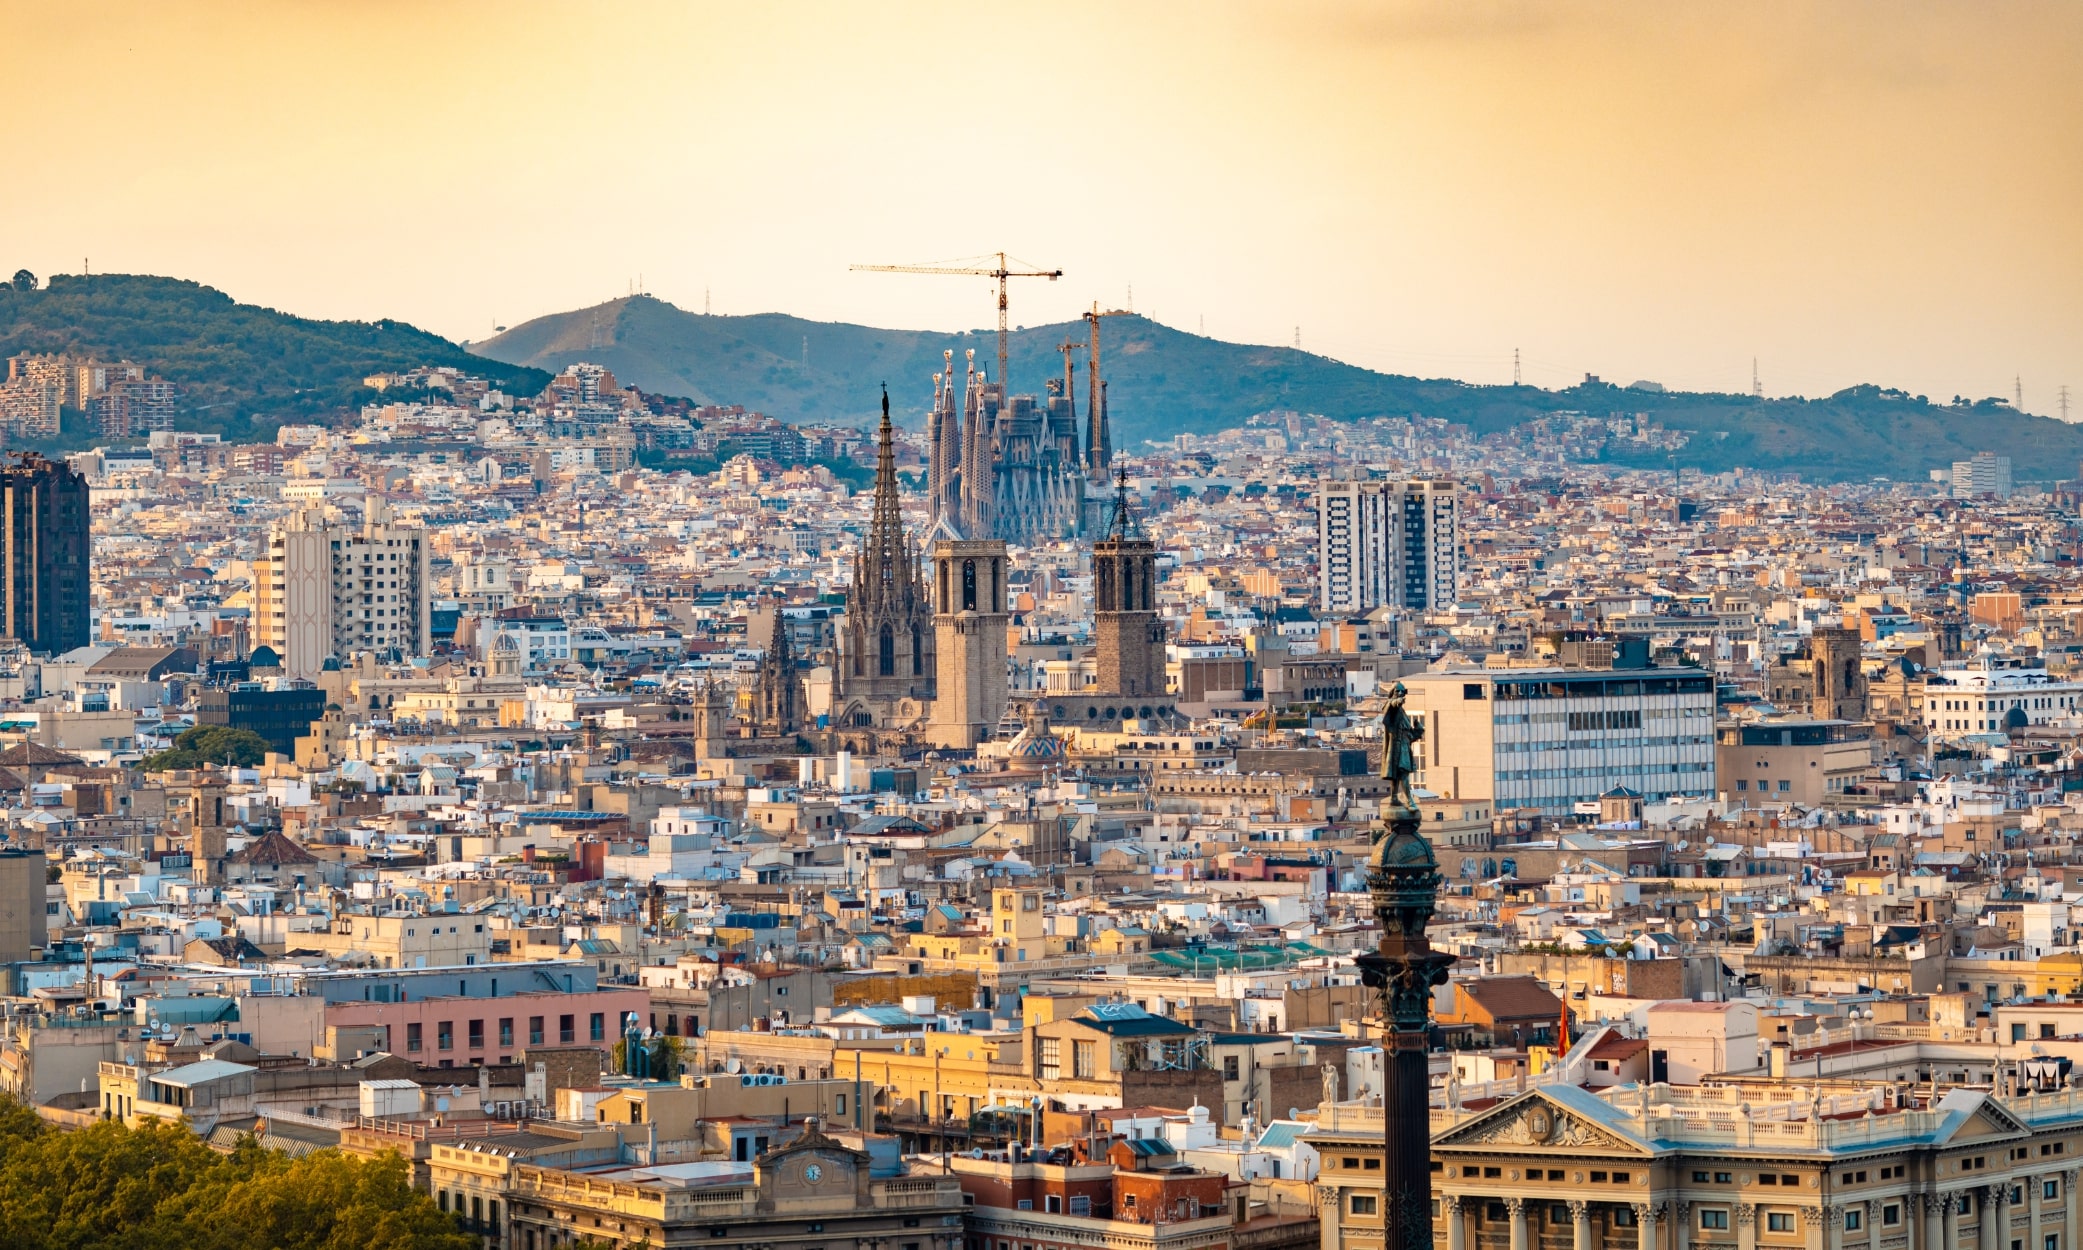 Tìm hiểu những gì đang xảy ra với chương trình Cư trú Tây Ban Nha theo diện Đầu tư.